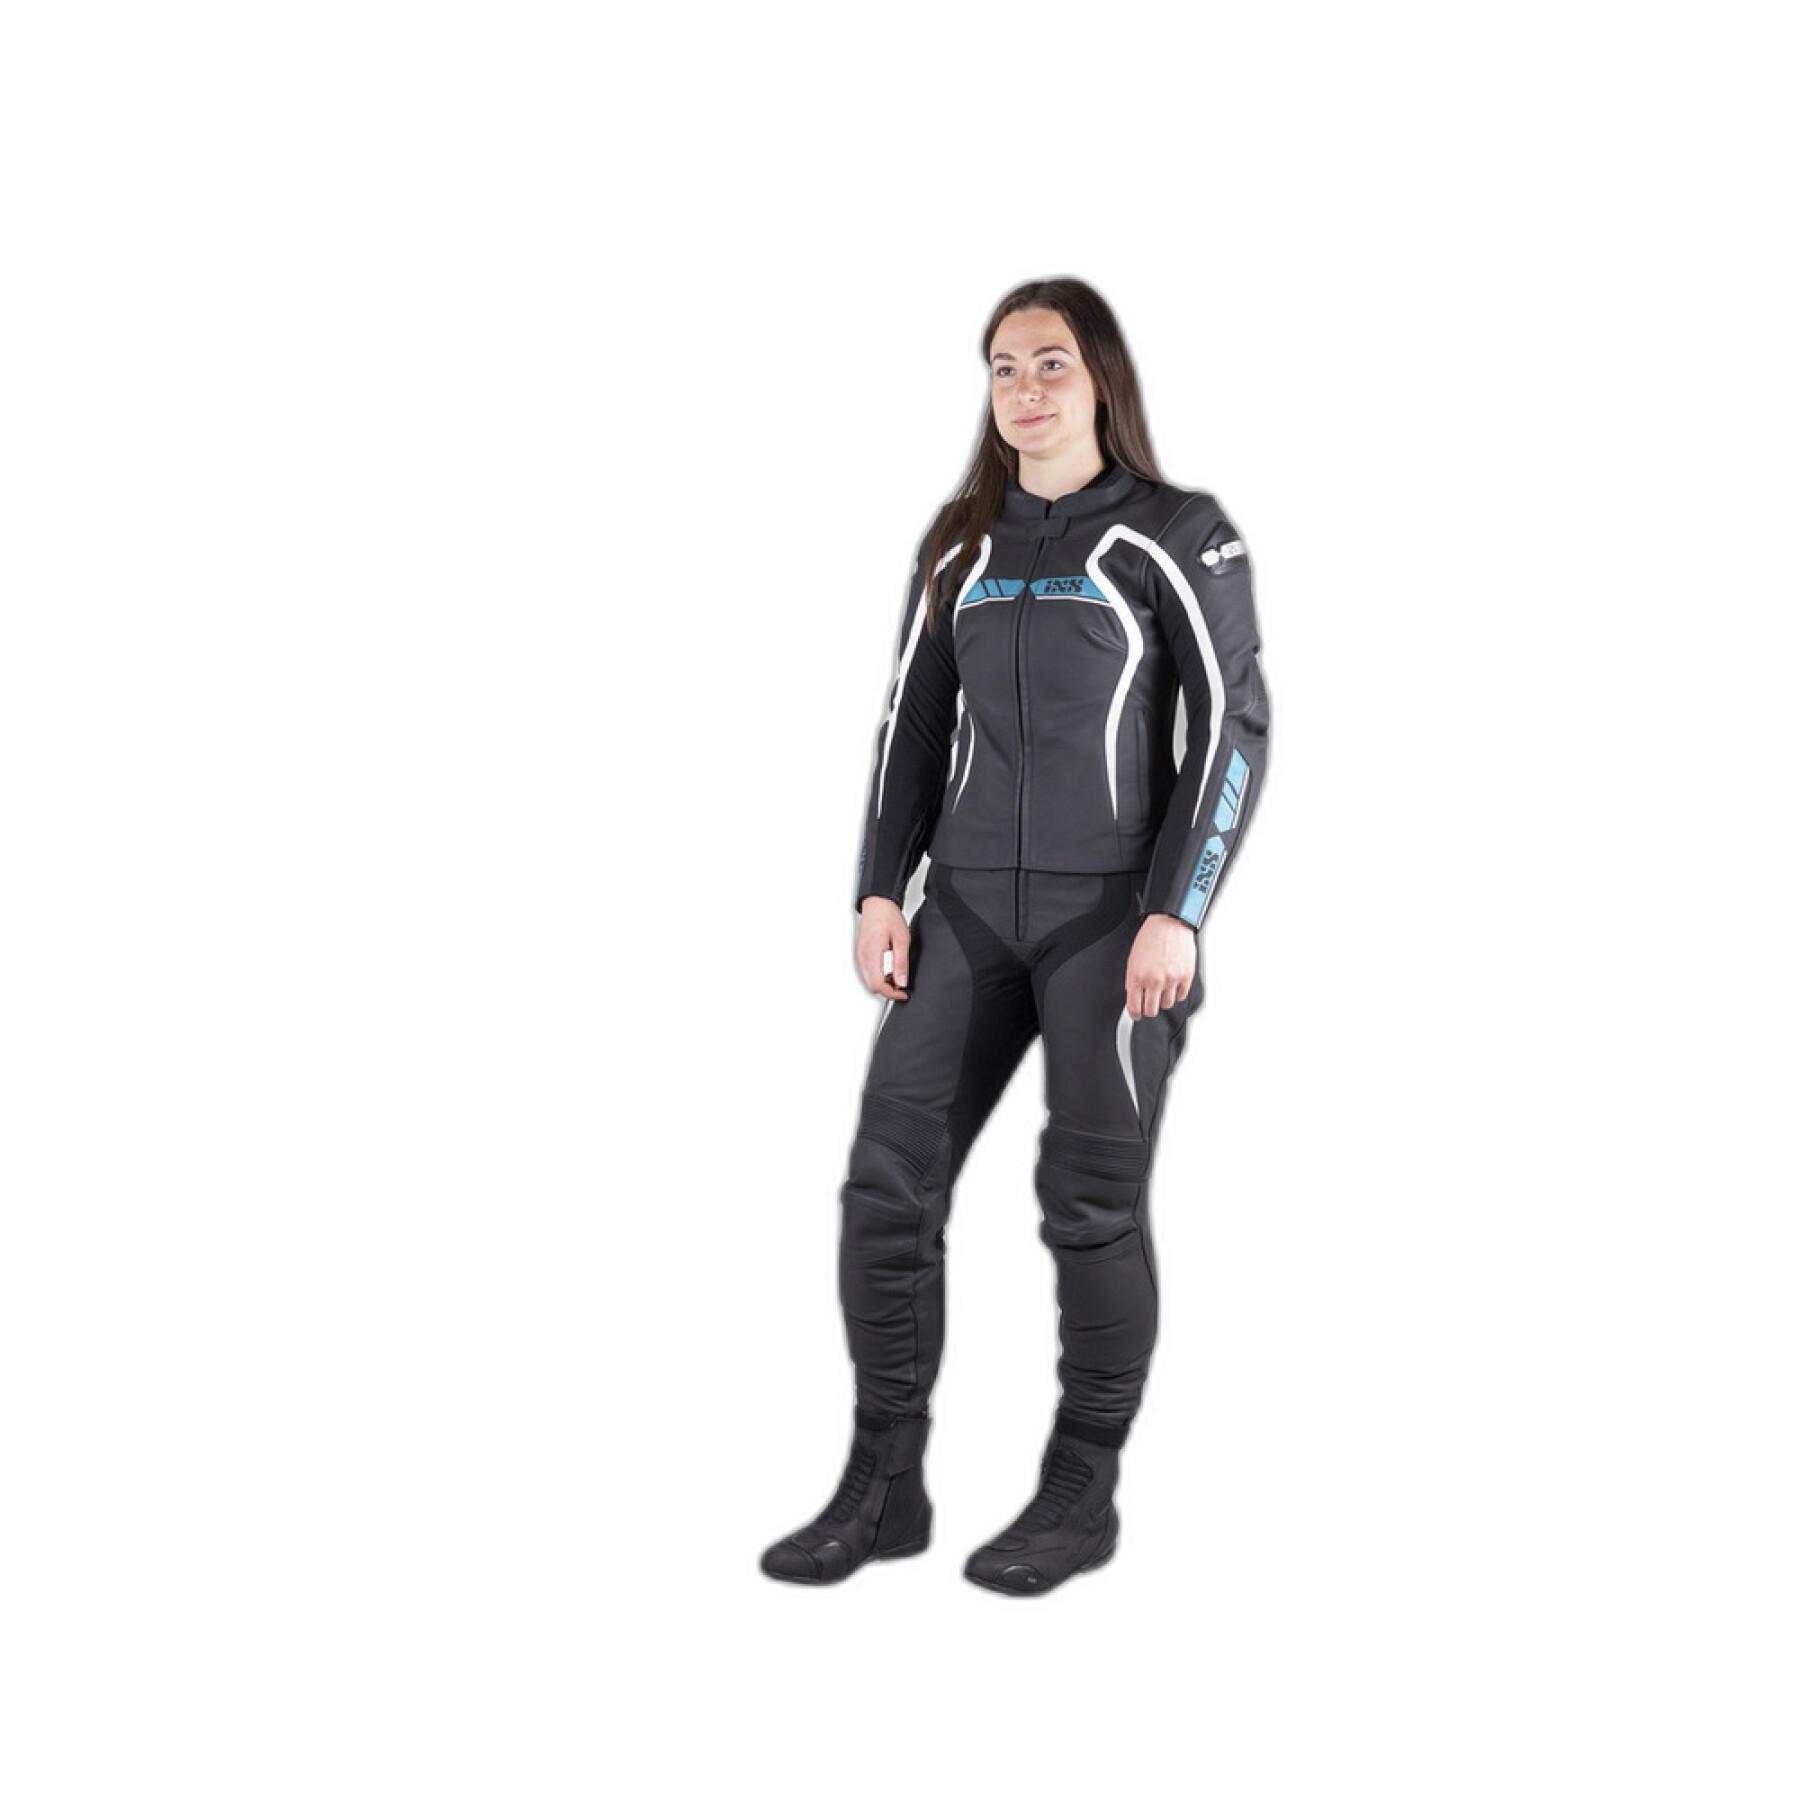 Pantalon moto sport femme IXS ld rs-600 1.0